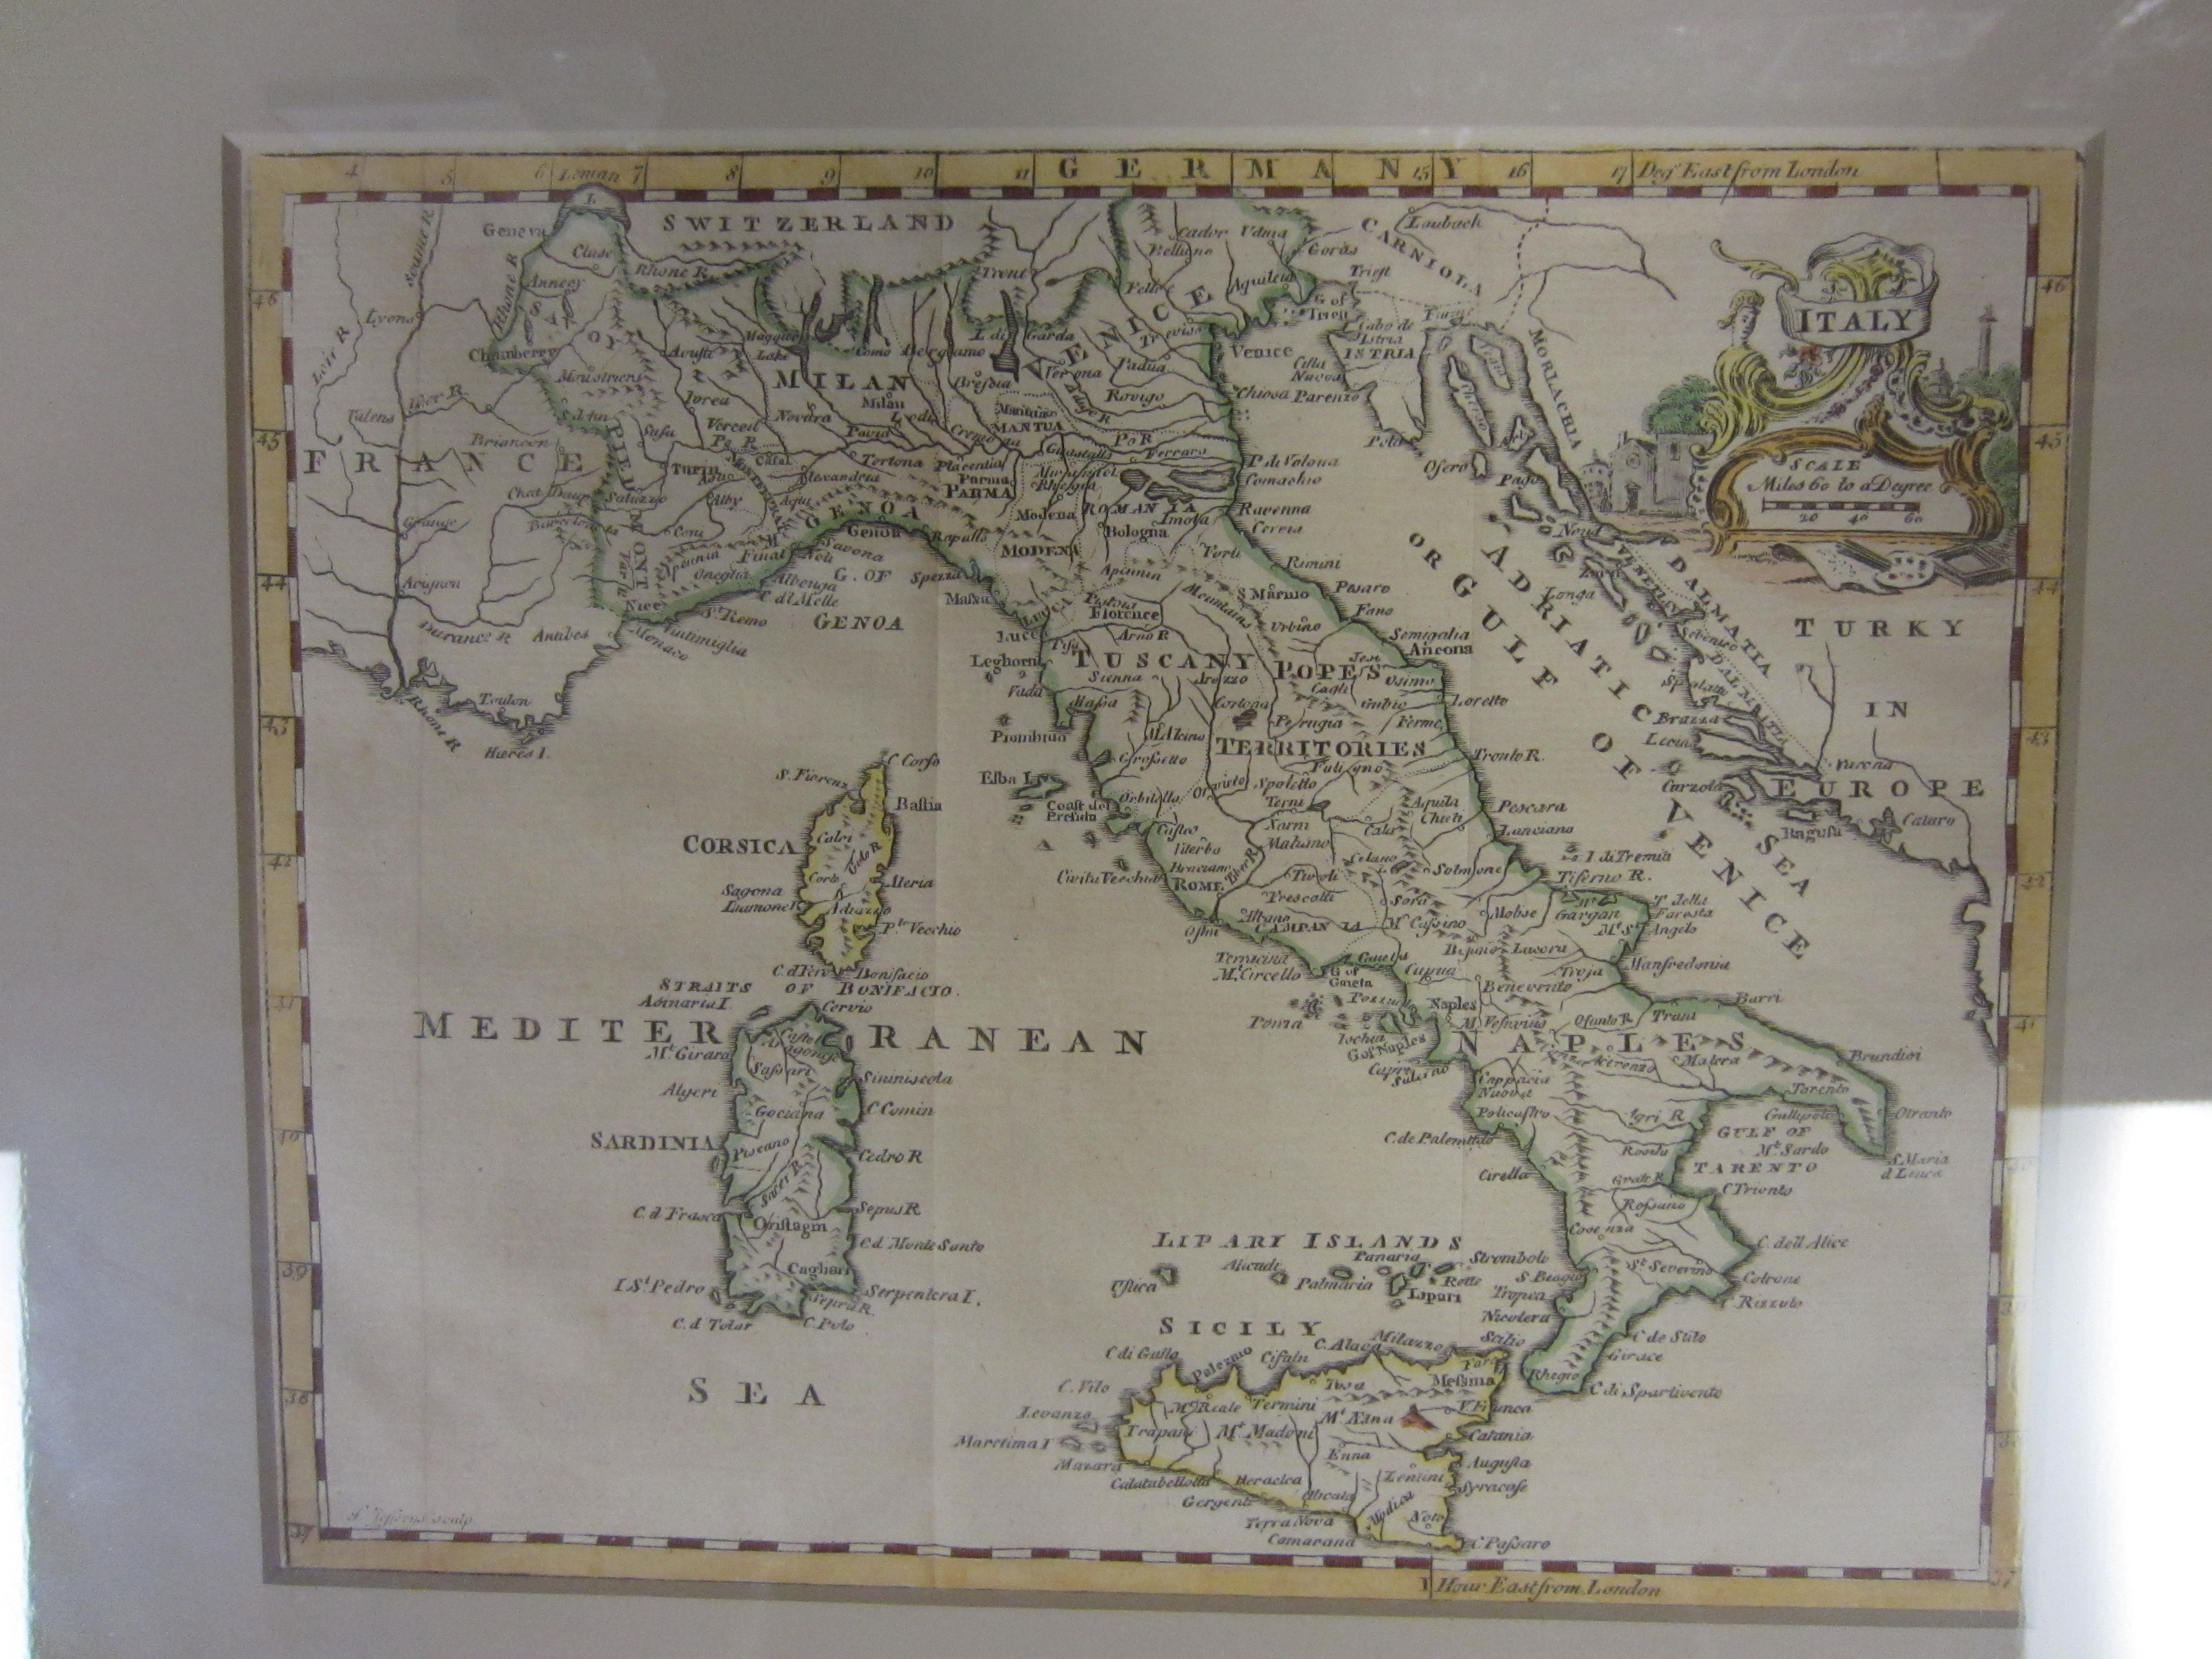 Italy (including Corsica, Sardinia and Sicily)